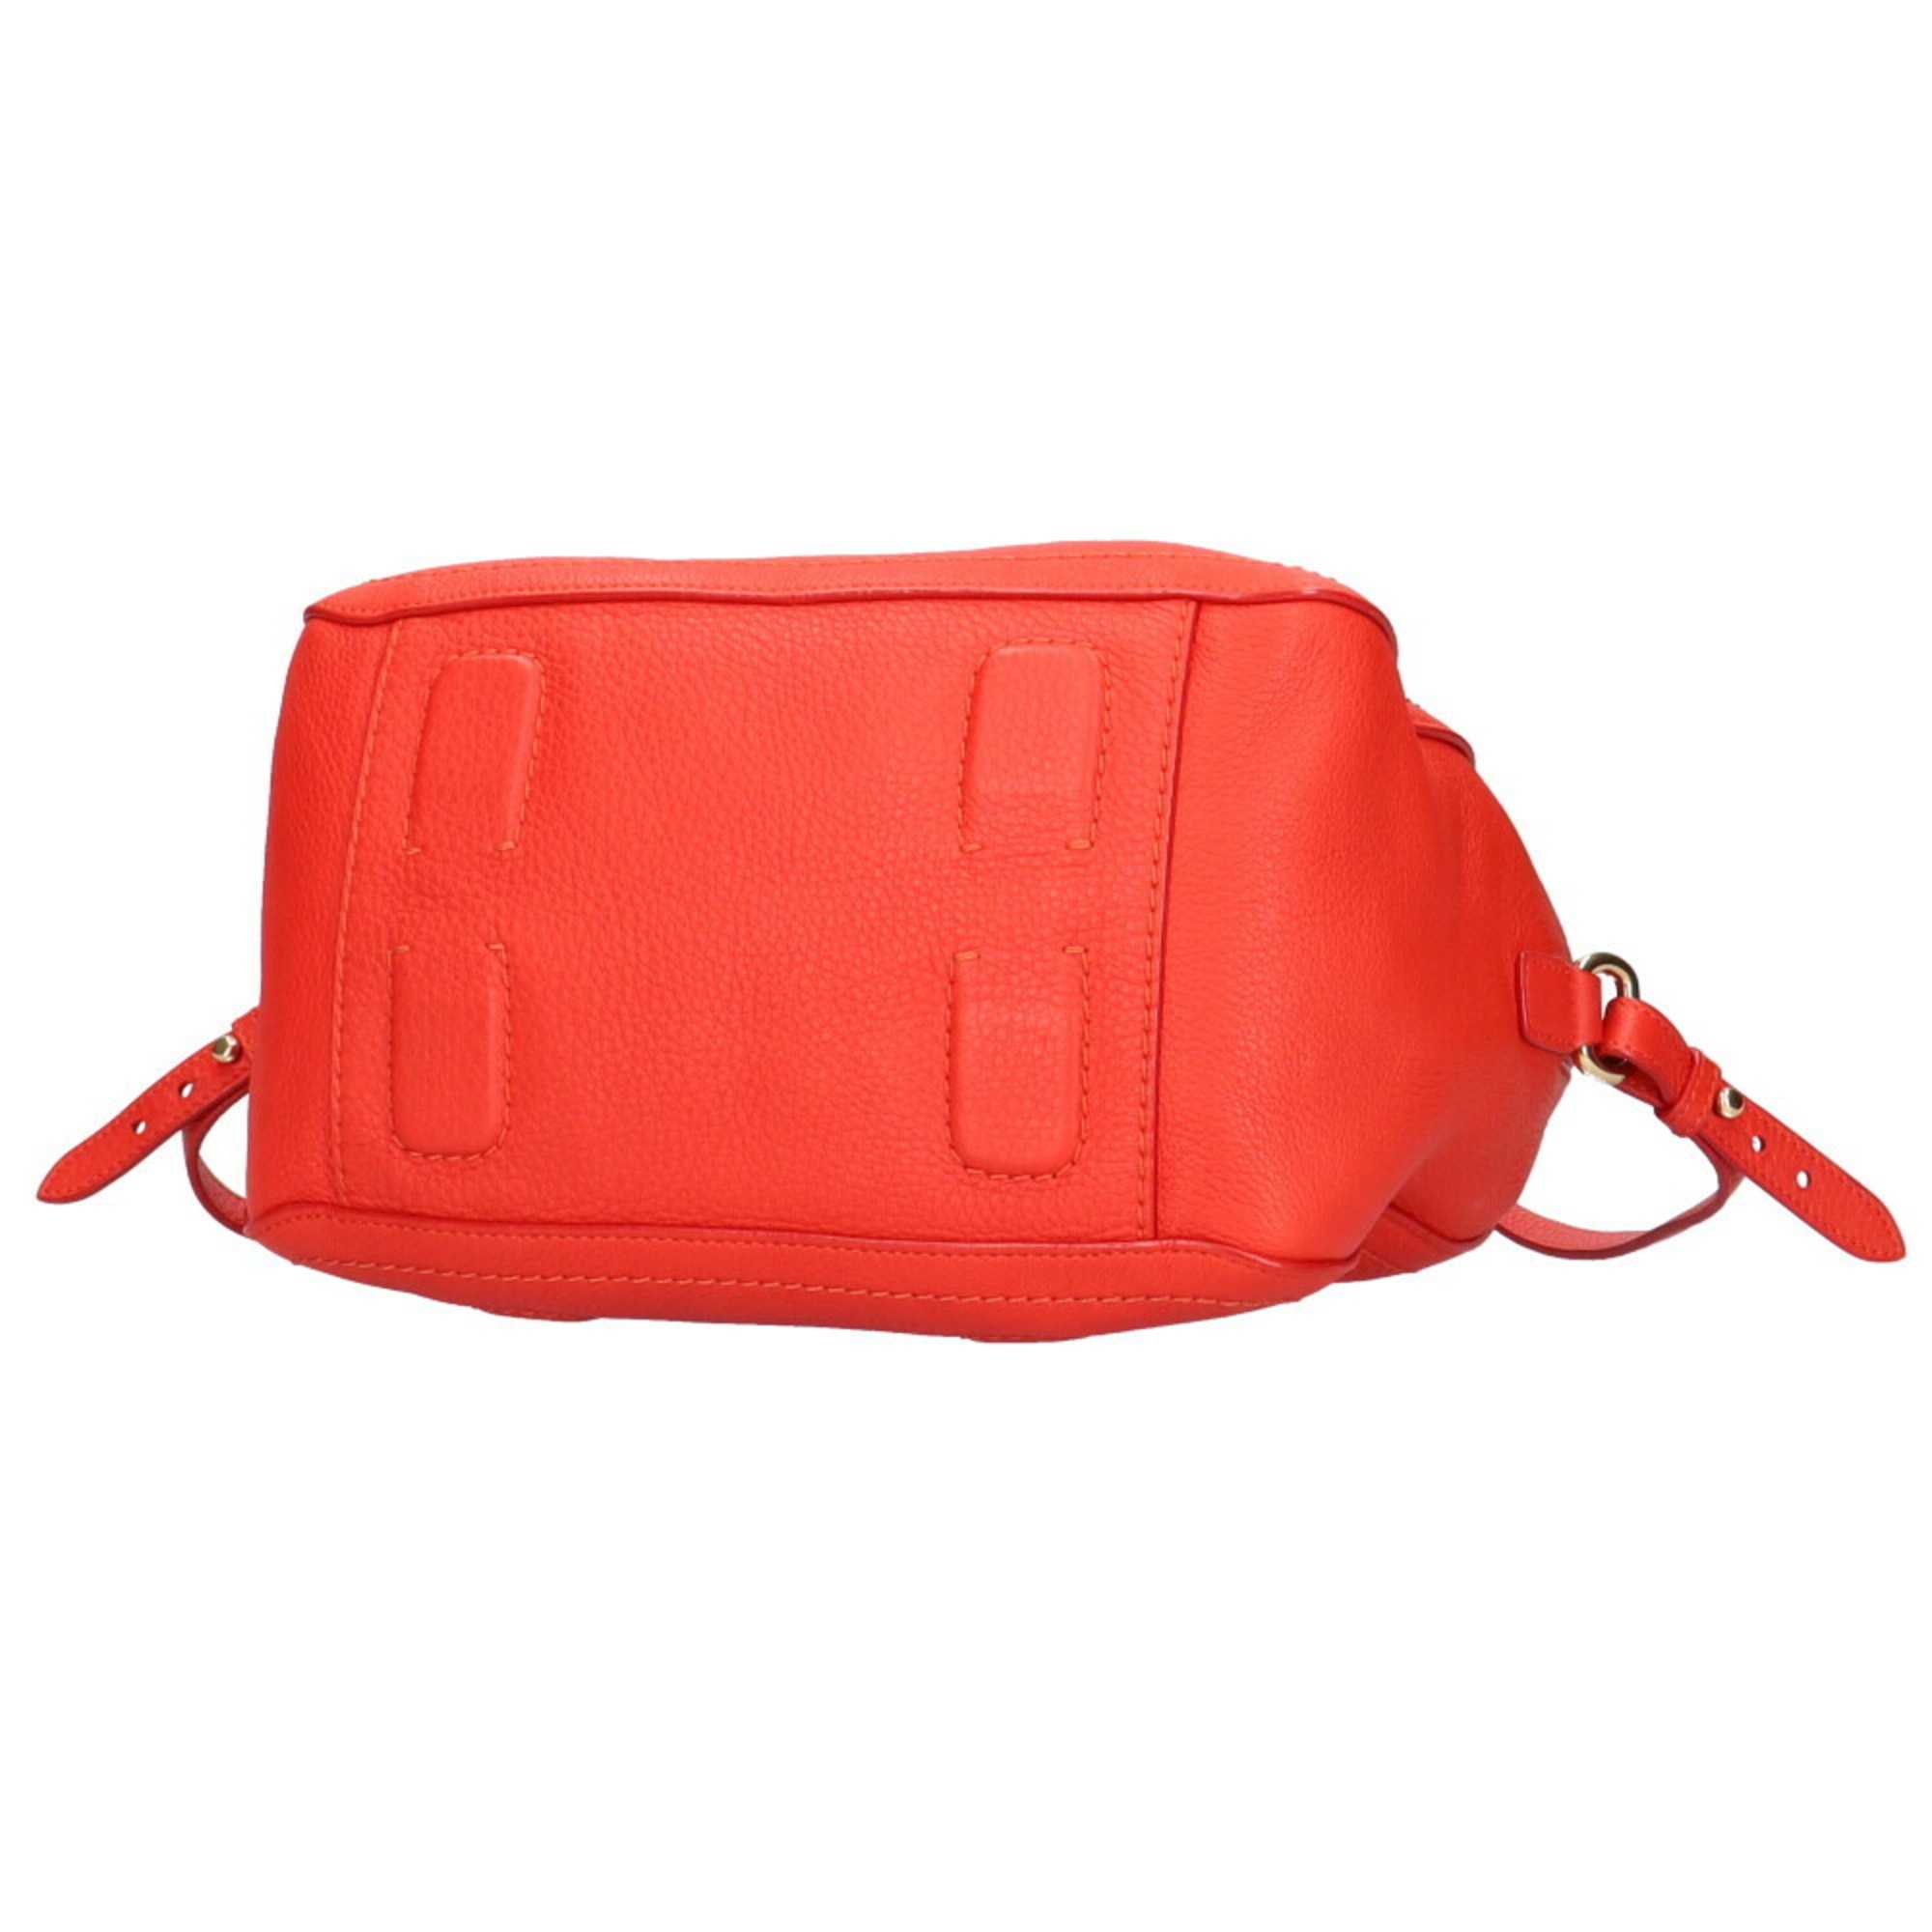 Salvatore Ferragamo shoulder bag leather red ladies